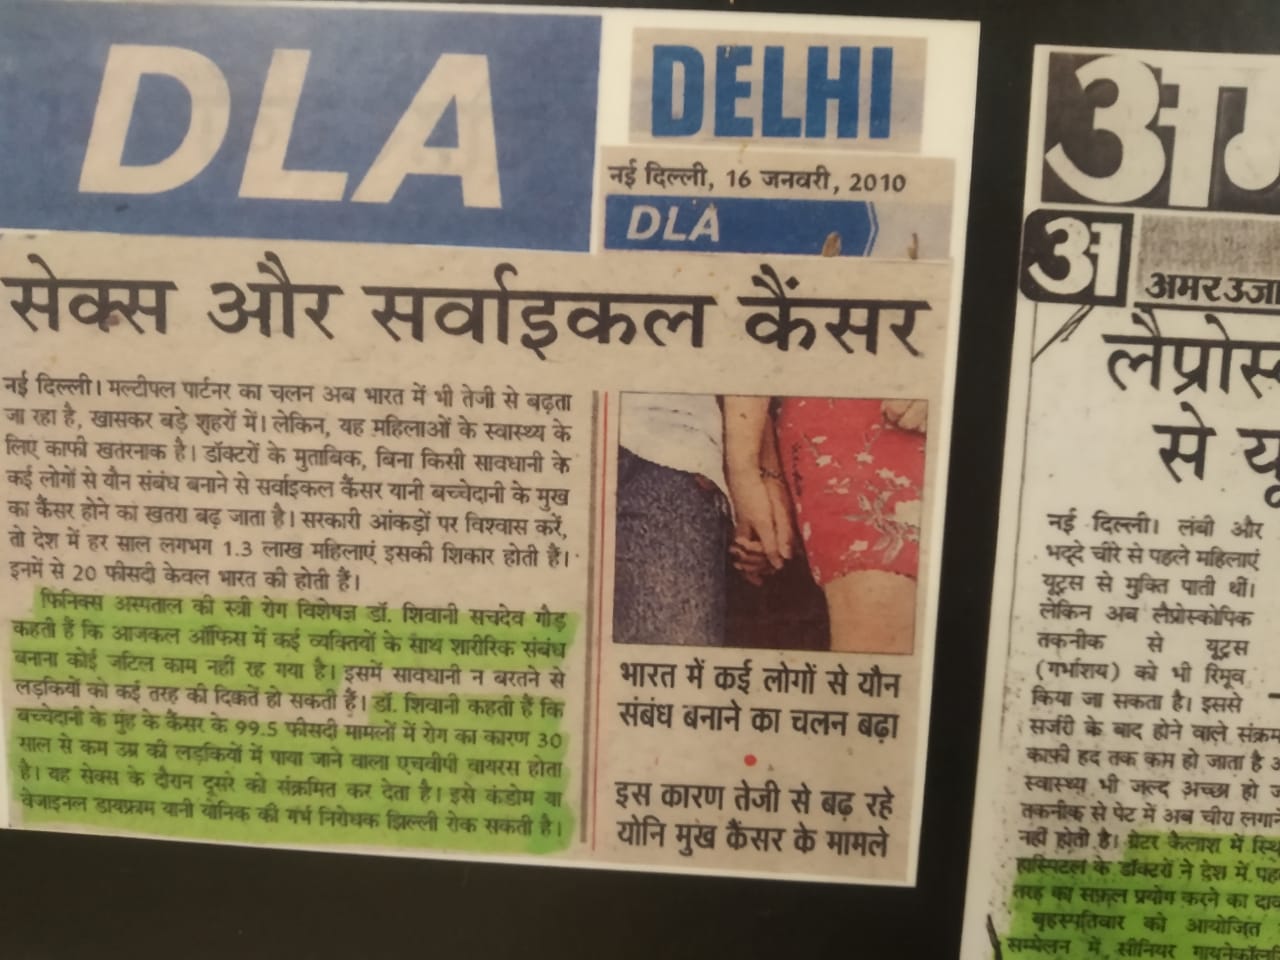 Sex and Cervical Cancer News in DLA Delhi